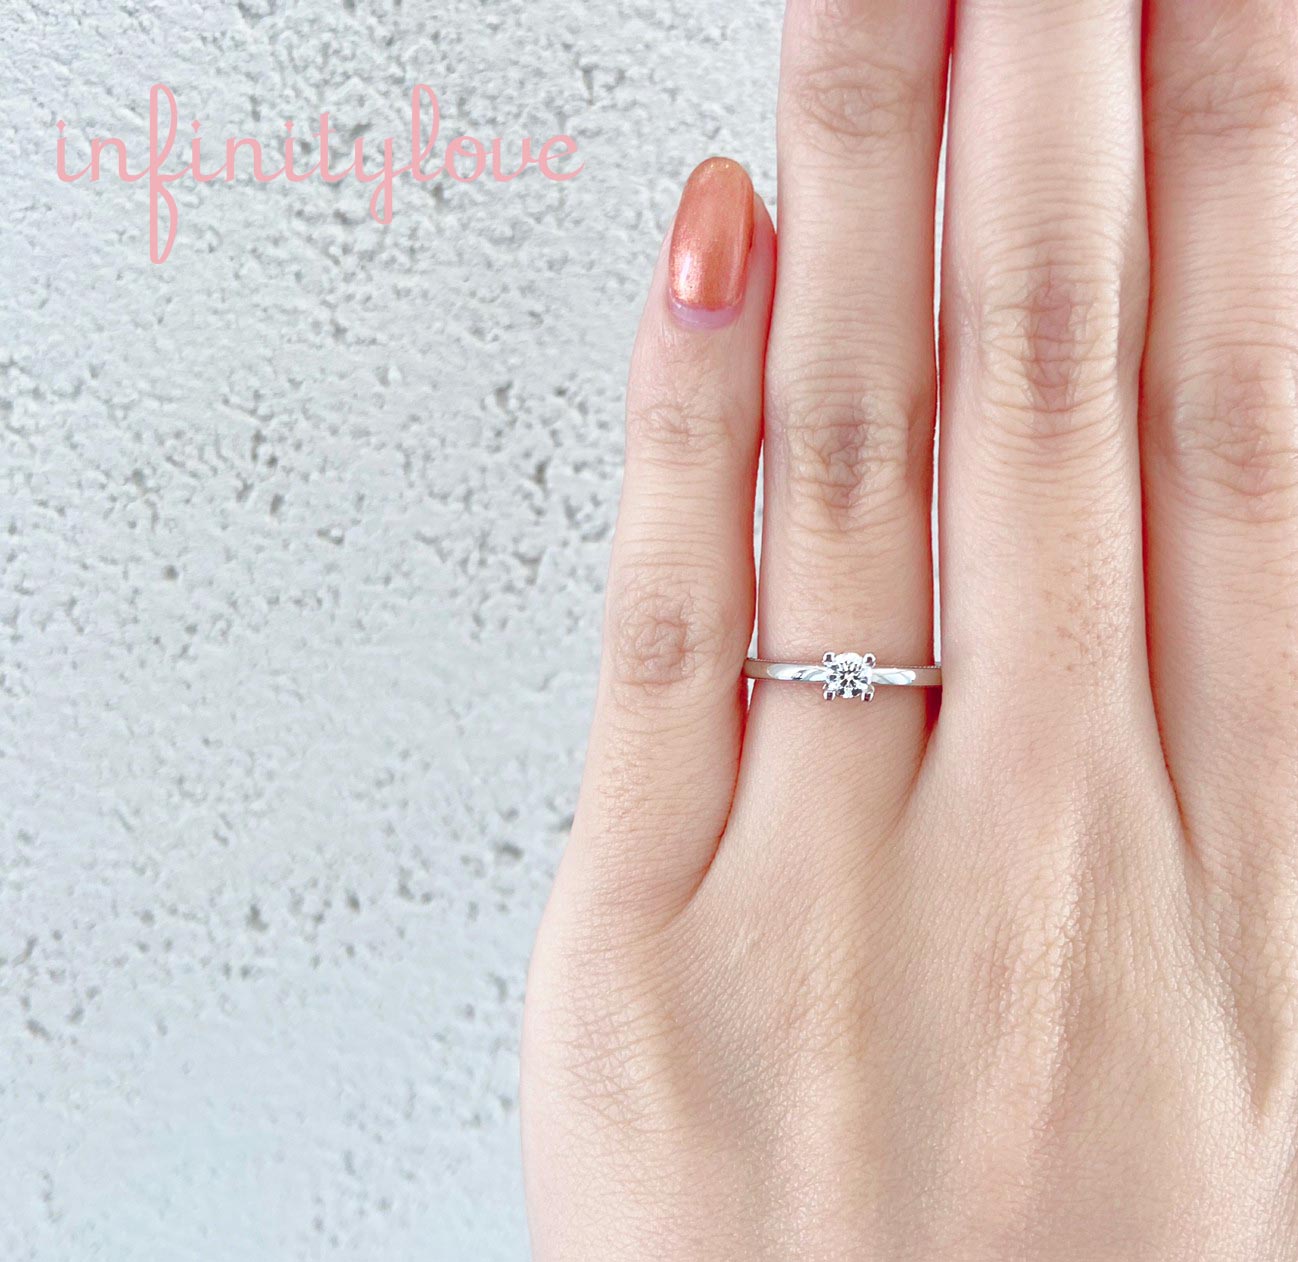 ミルグレインが可愛いシンプルなモチーフデザインの婚約指輪です。